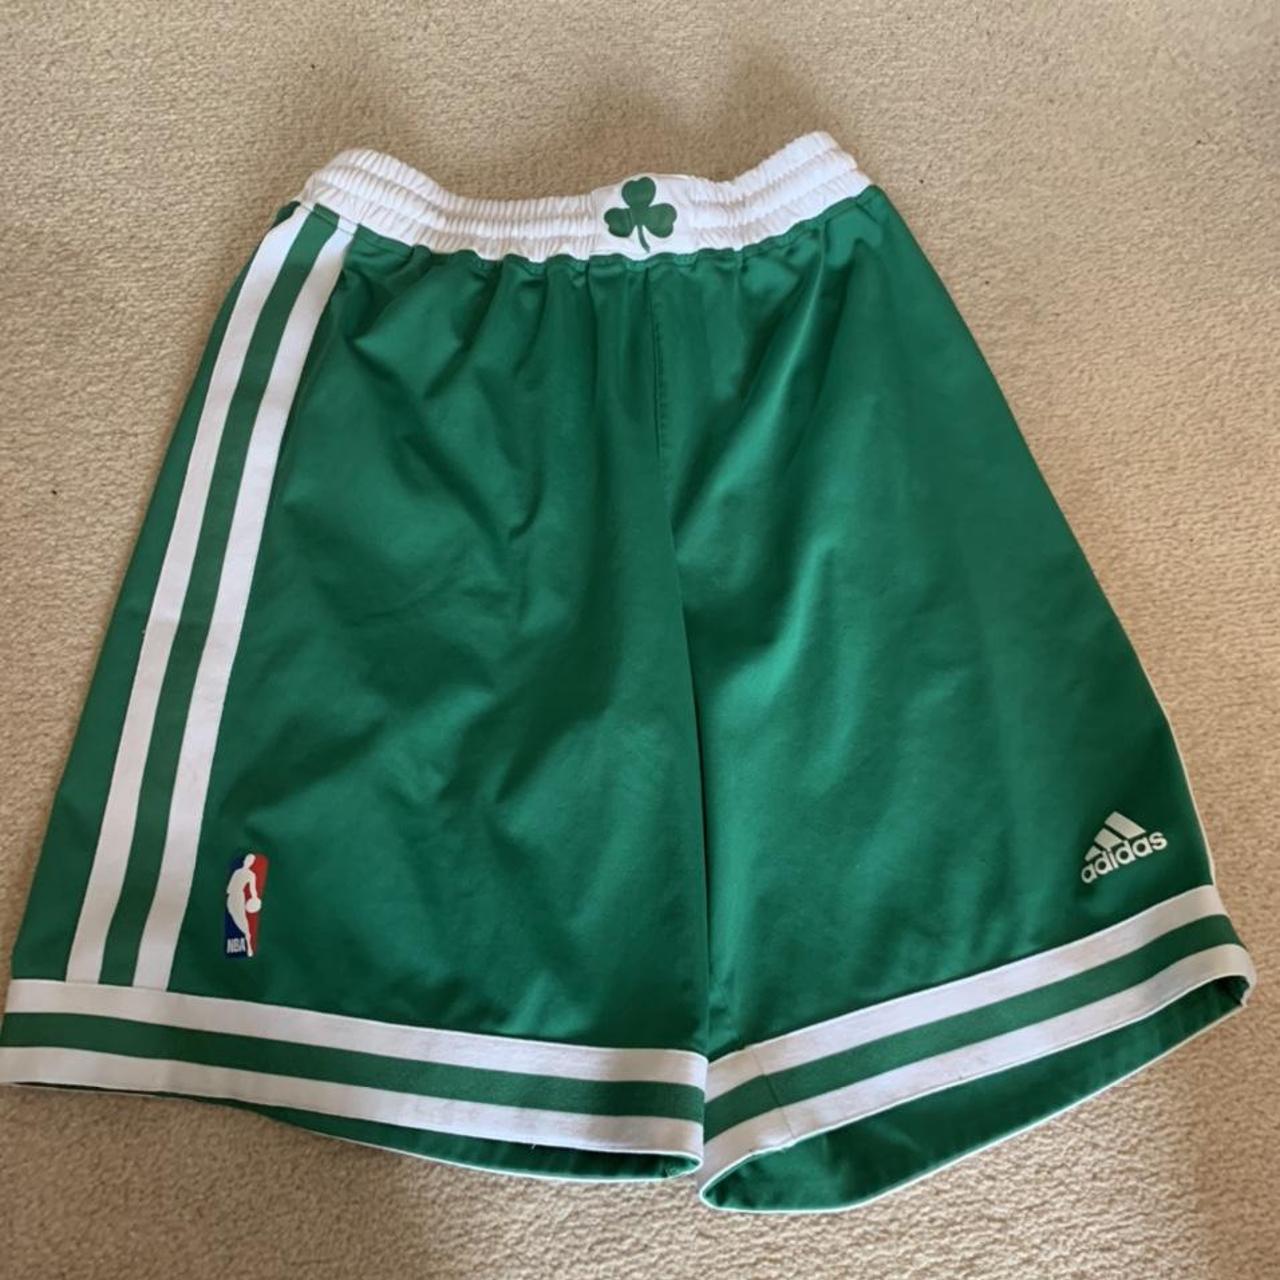 Boston Celtics adidas basketball shorts. Youth large... - Depop